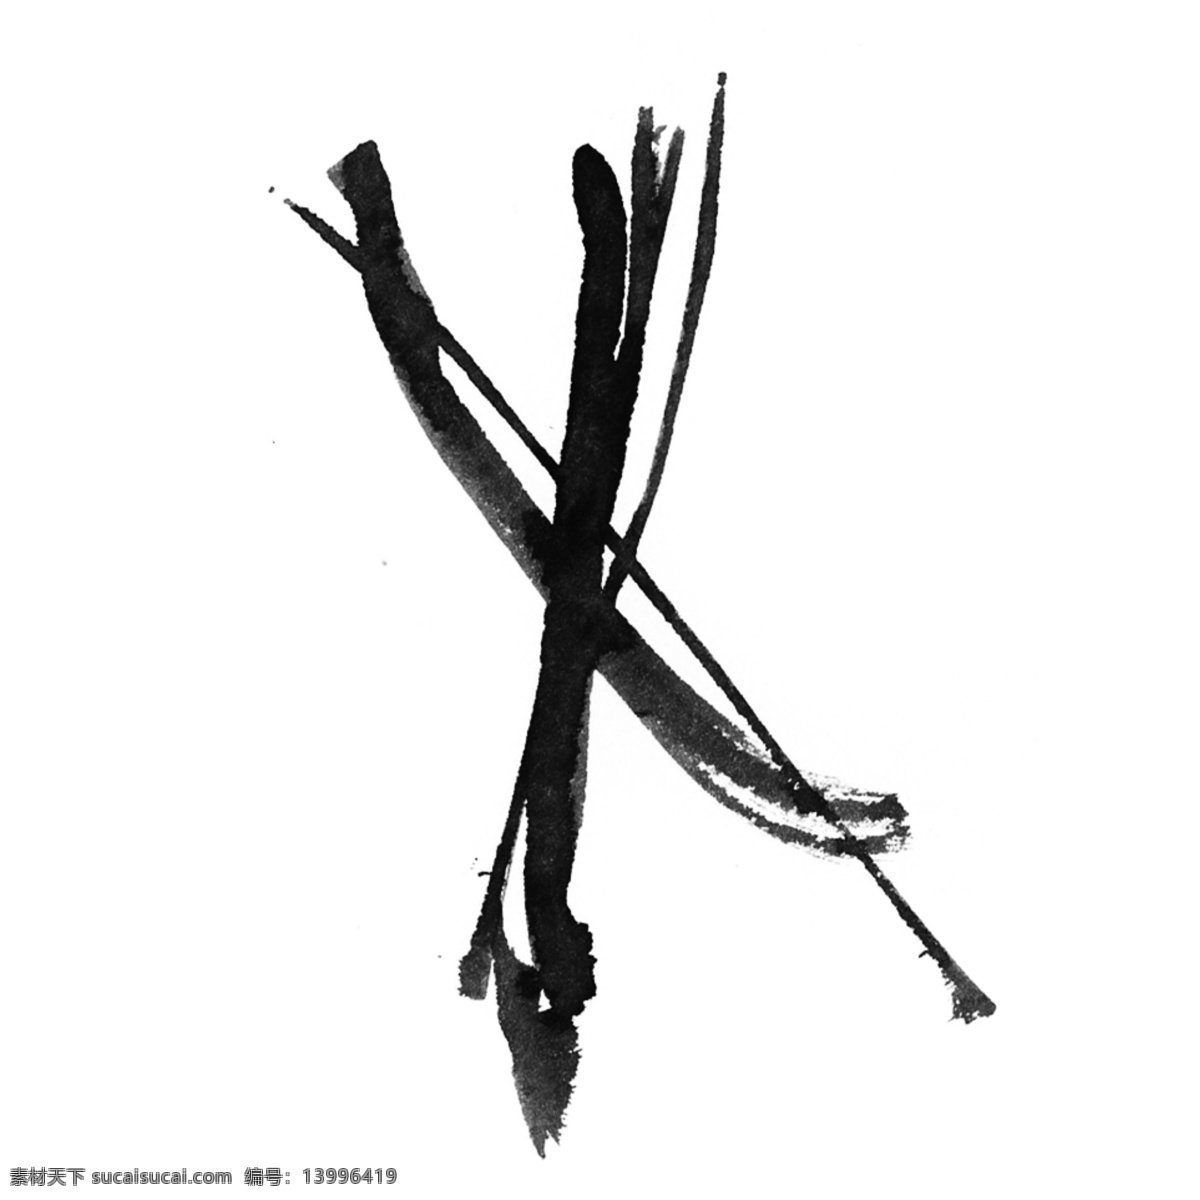 水彩 叉 黑色 泼墨 错误 打叉 卡通 手绘 创意 水墨 不规则 新意 漂浮 个性 抽象 挥洒 中国风